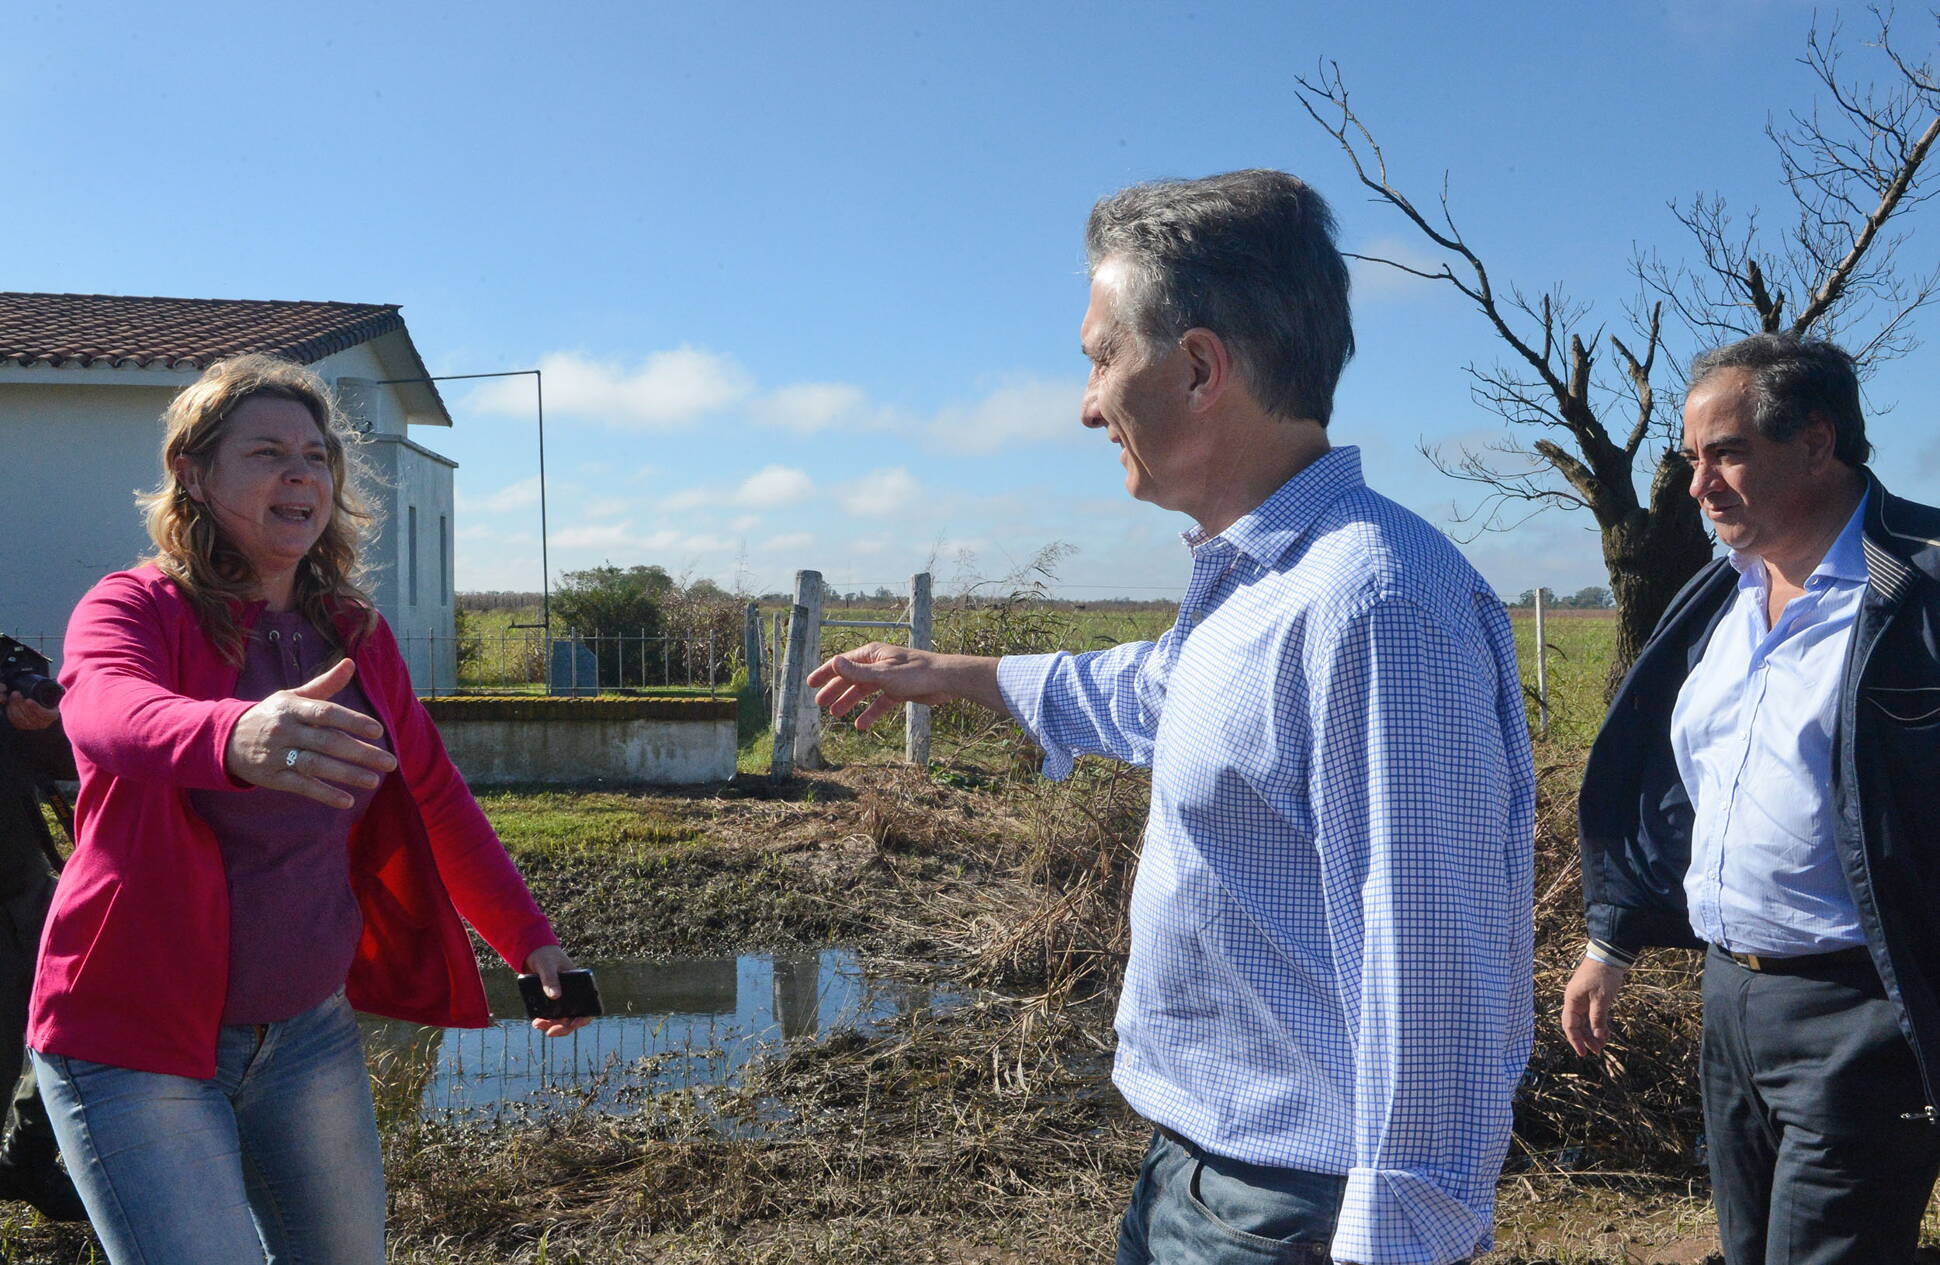 El presidente Macri se reunió en Santa Fe con familias afectadas por las inundaciones